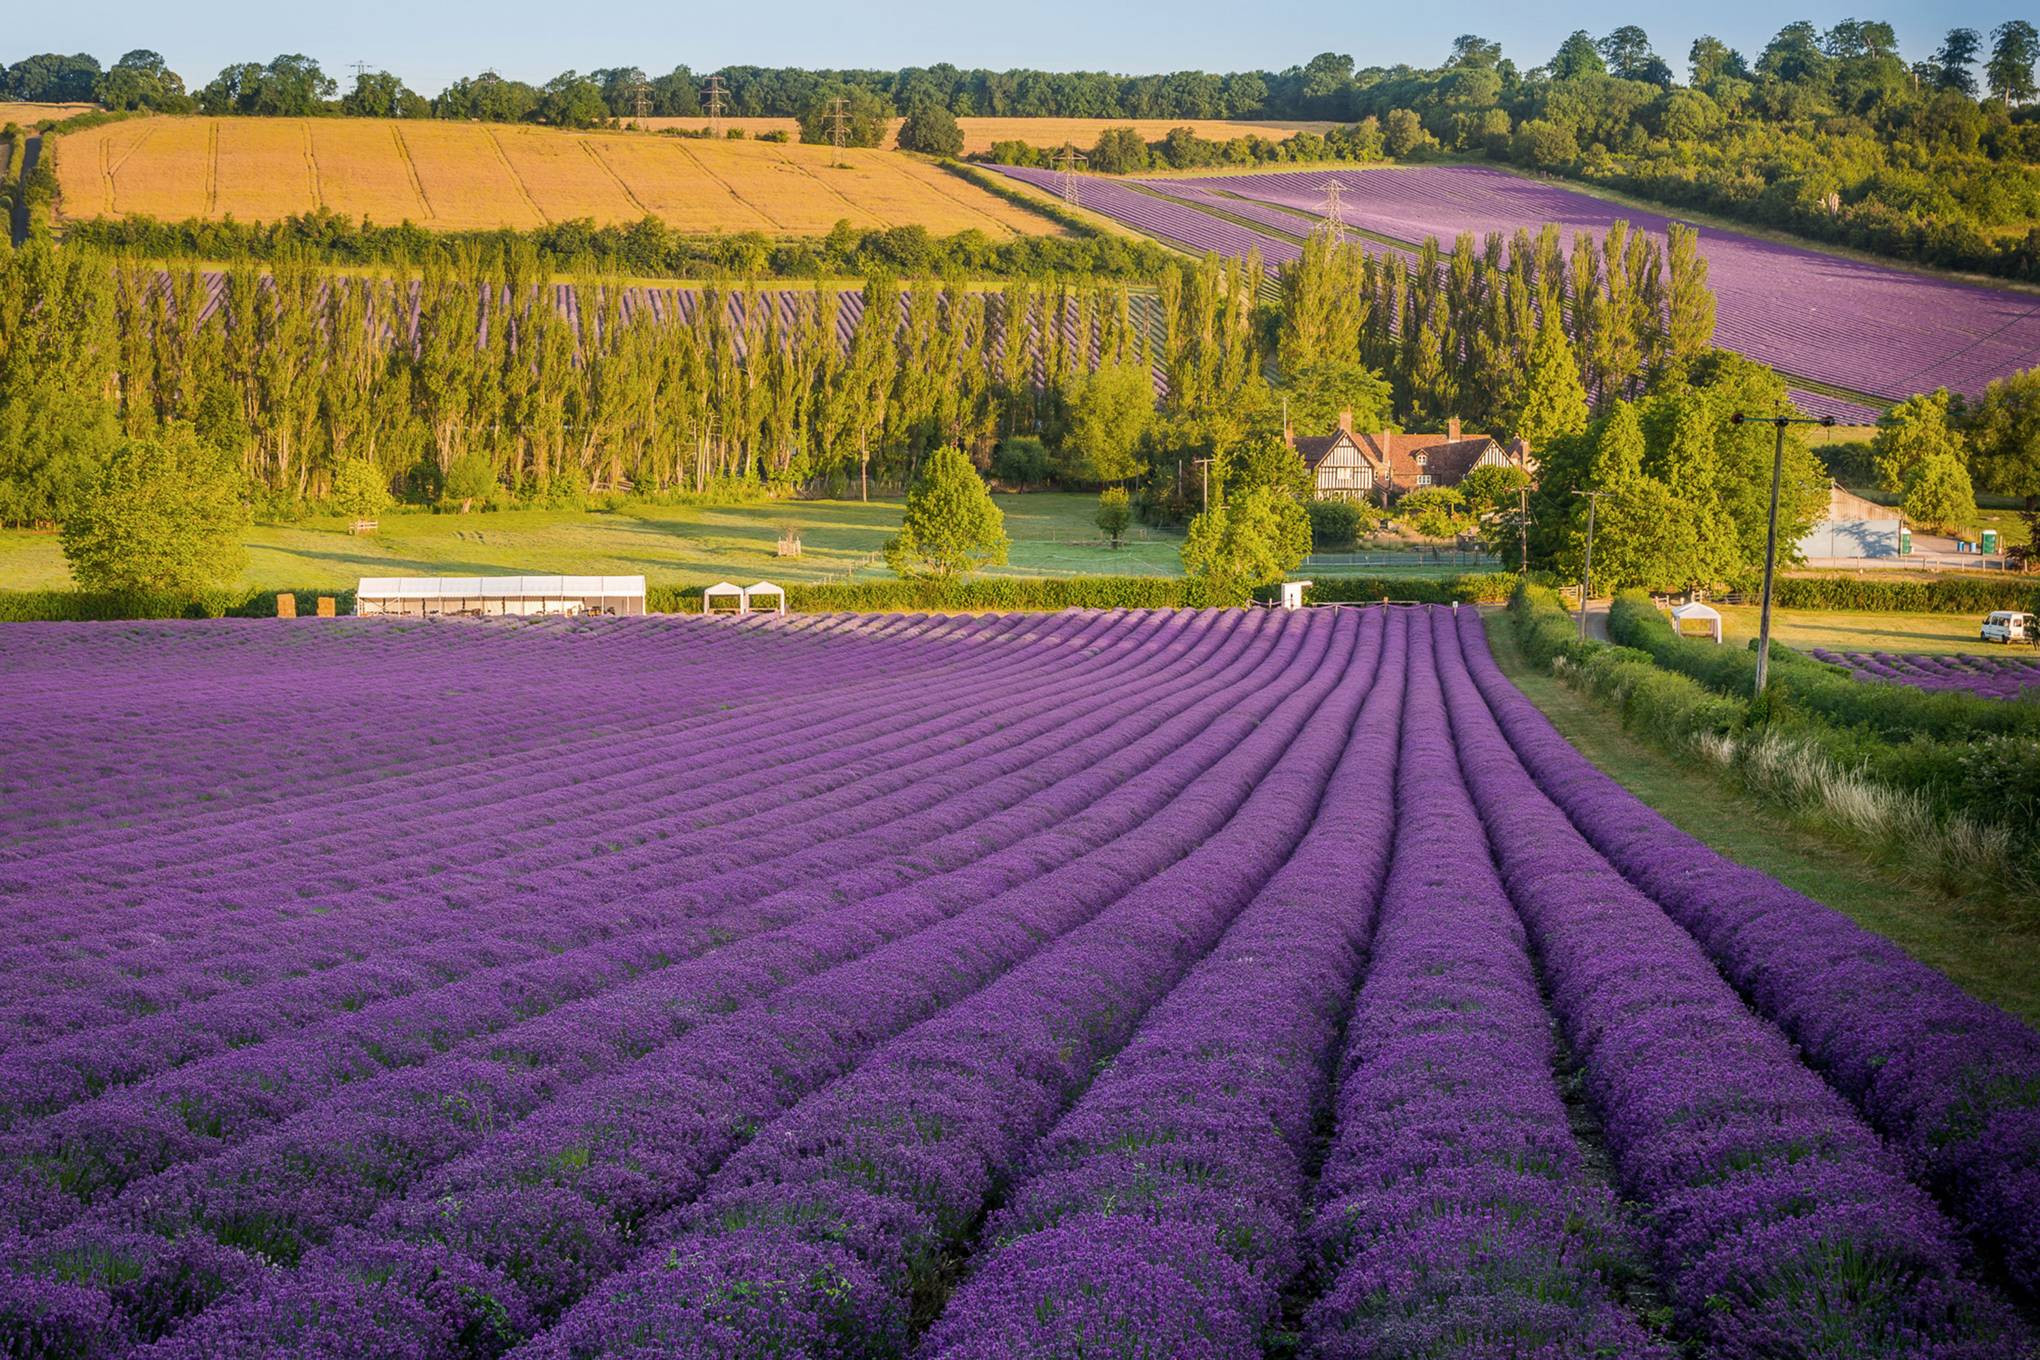 Hương thơm ngào ngạt của lavender Pháp sẽ được tái hiện trong bức ảnh này. Lavender với màu tím trầm ấm, có khả năng làm dịu đi những căng thẳng trong cuộc sống của bạn. Hãy để bức ảnh này mang đến cho bạn cảm giác thoải mái, yên bình.